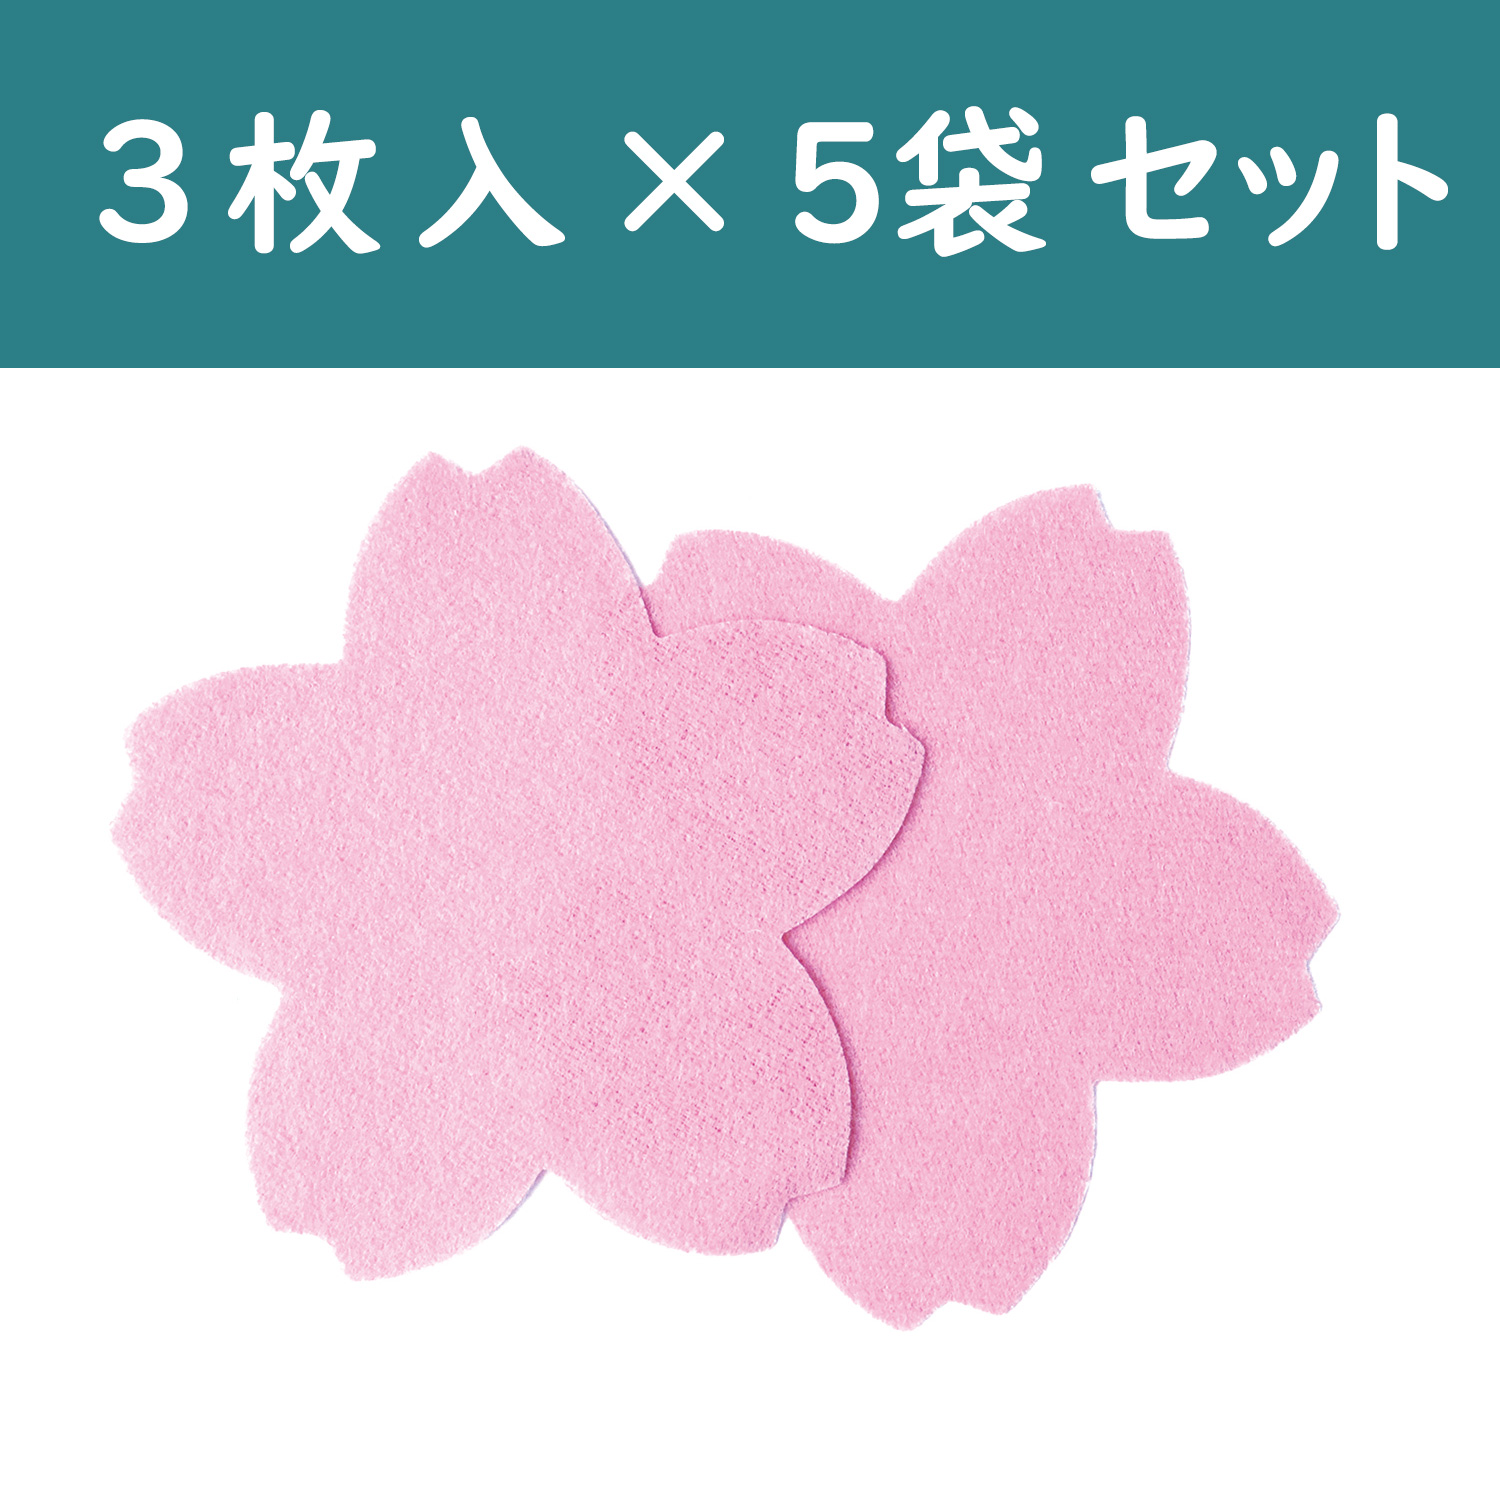 S40-13-5 桜型 メルトン 3枚入×5袋 (セット)